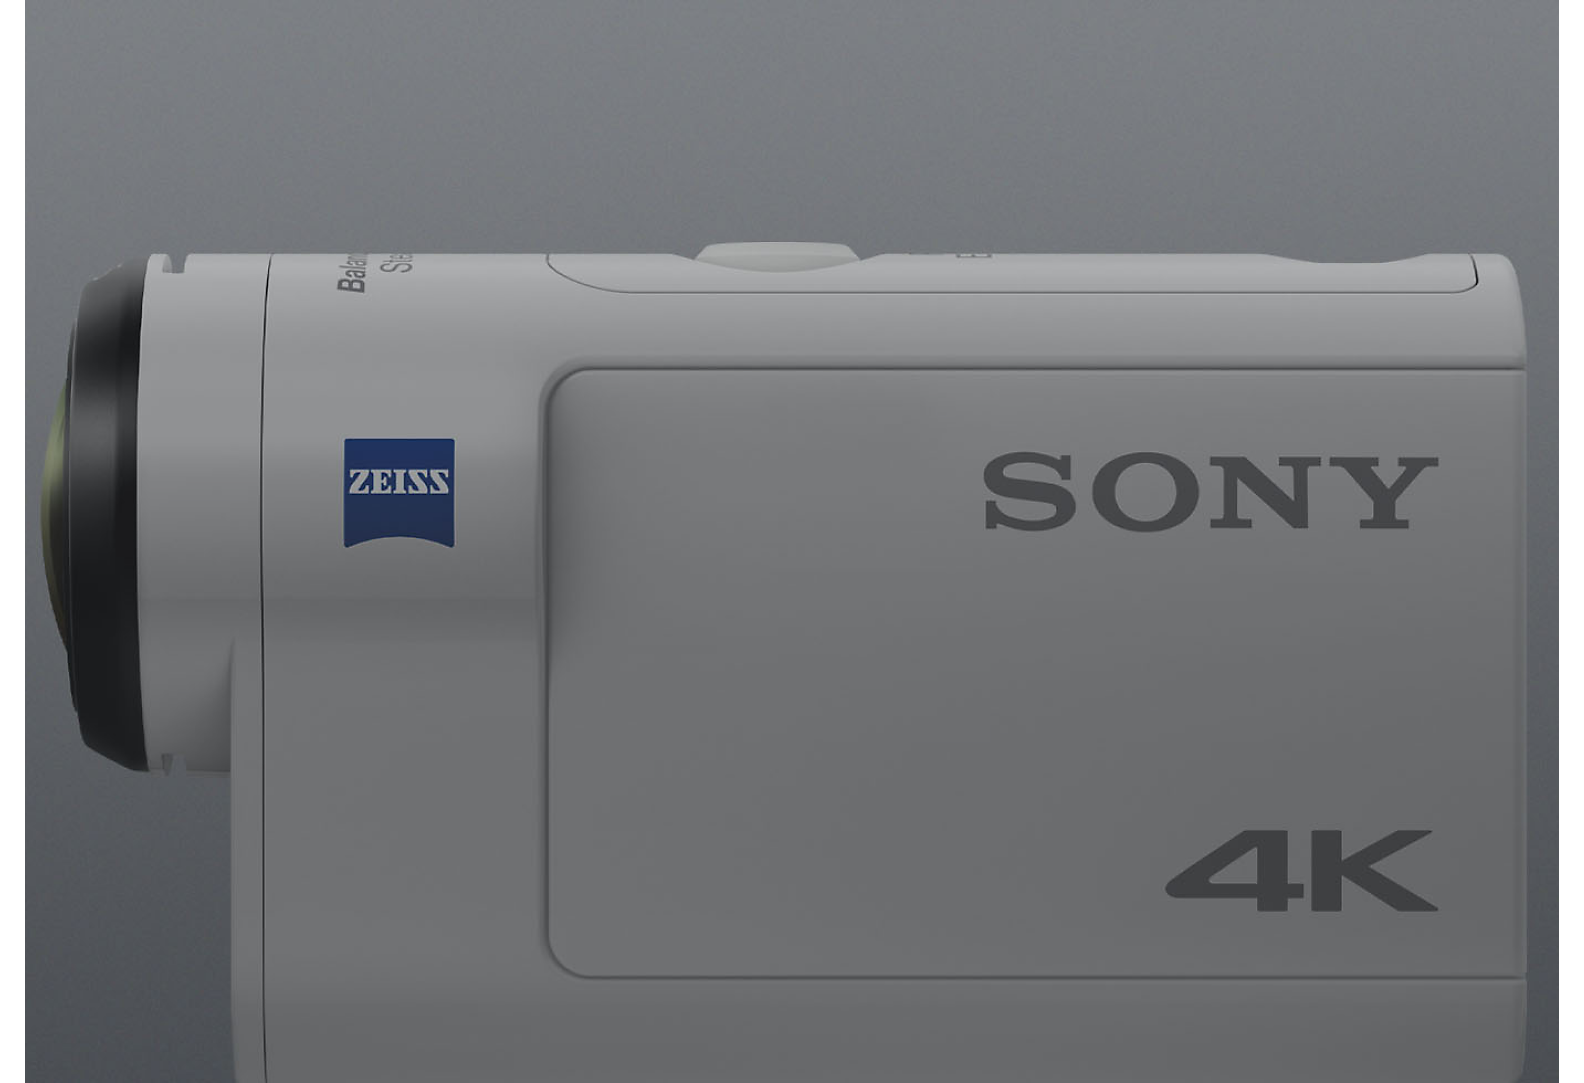 Hvidt Sony 4K Action Cam set fra siden